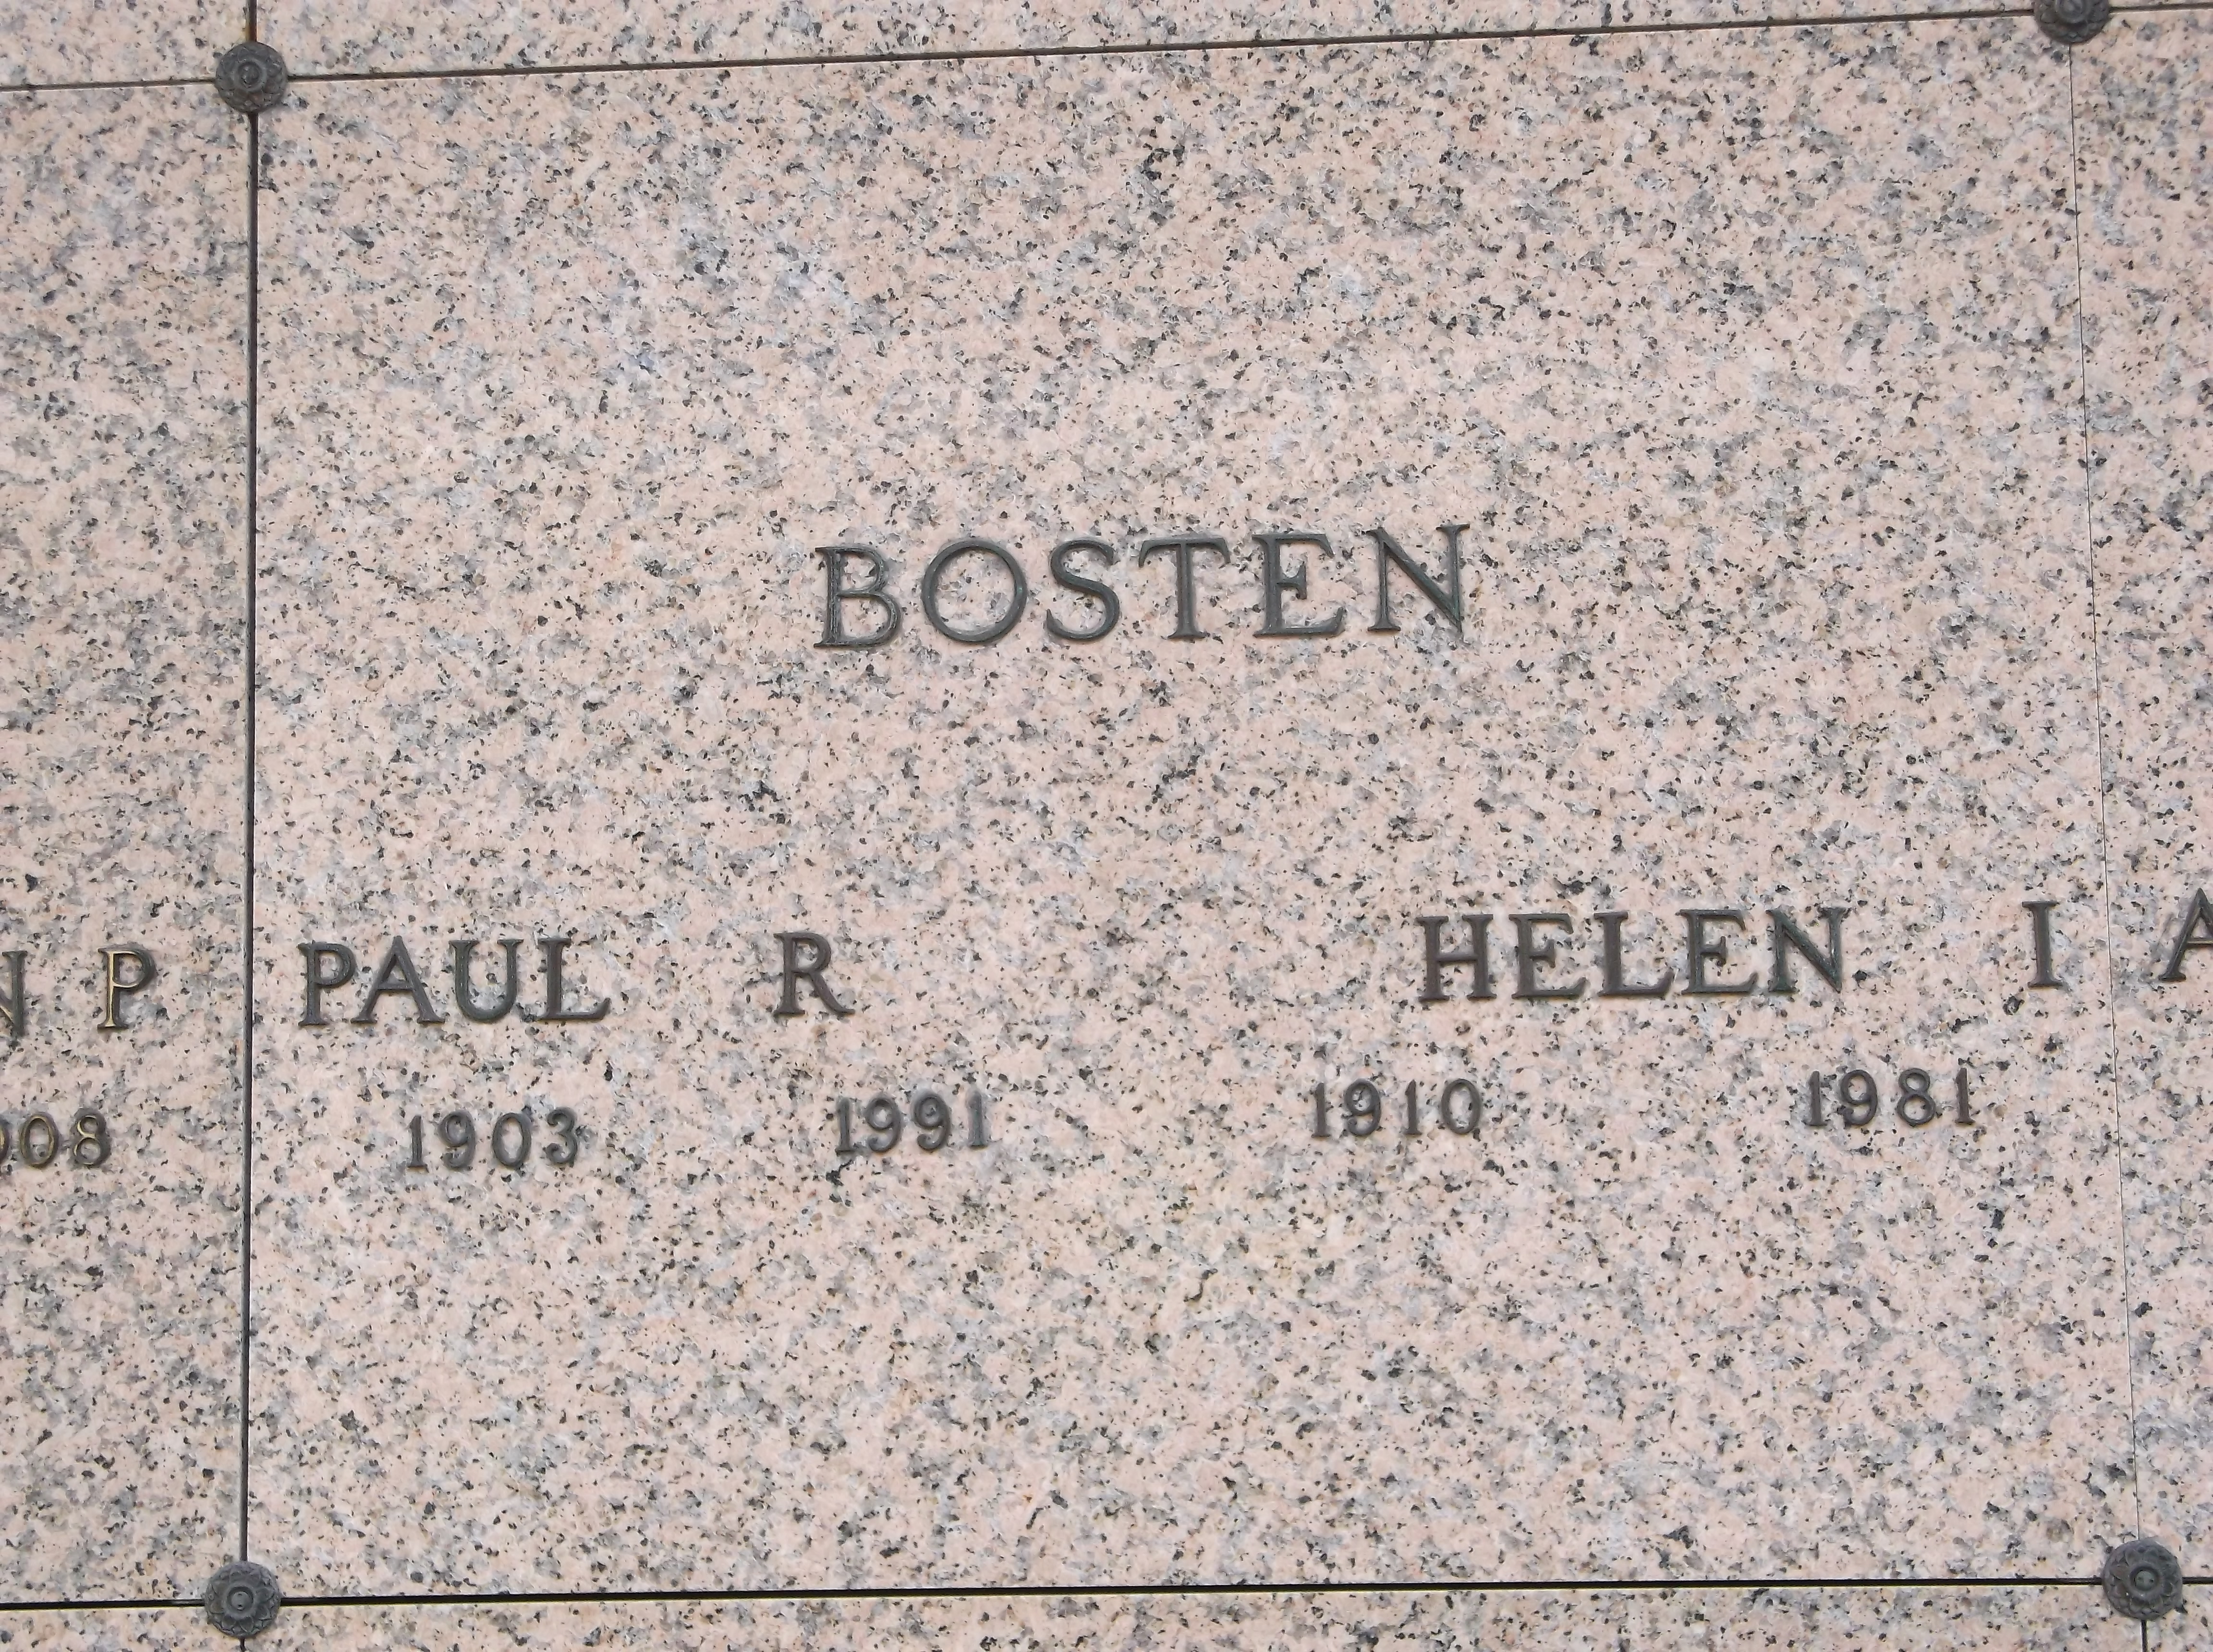 Helen I Bosten